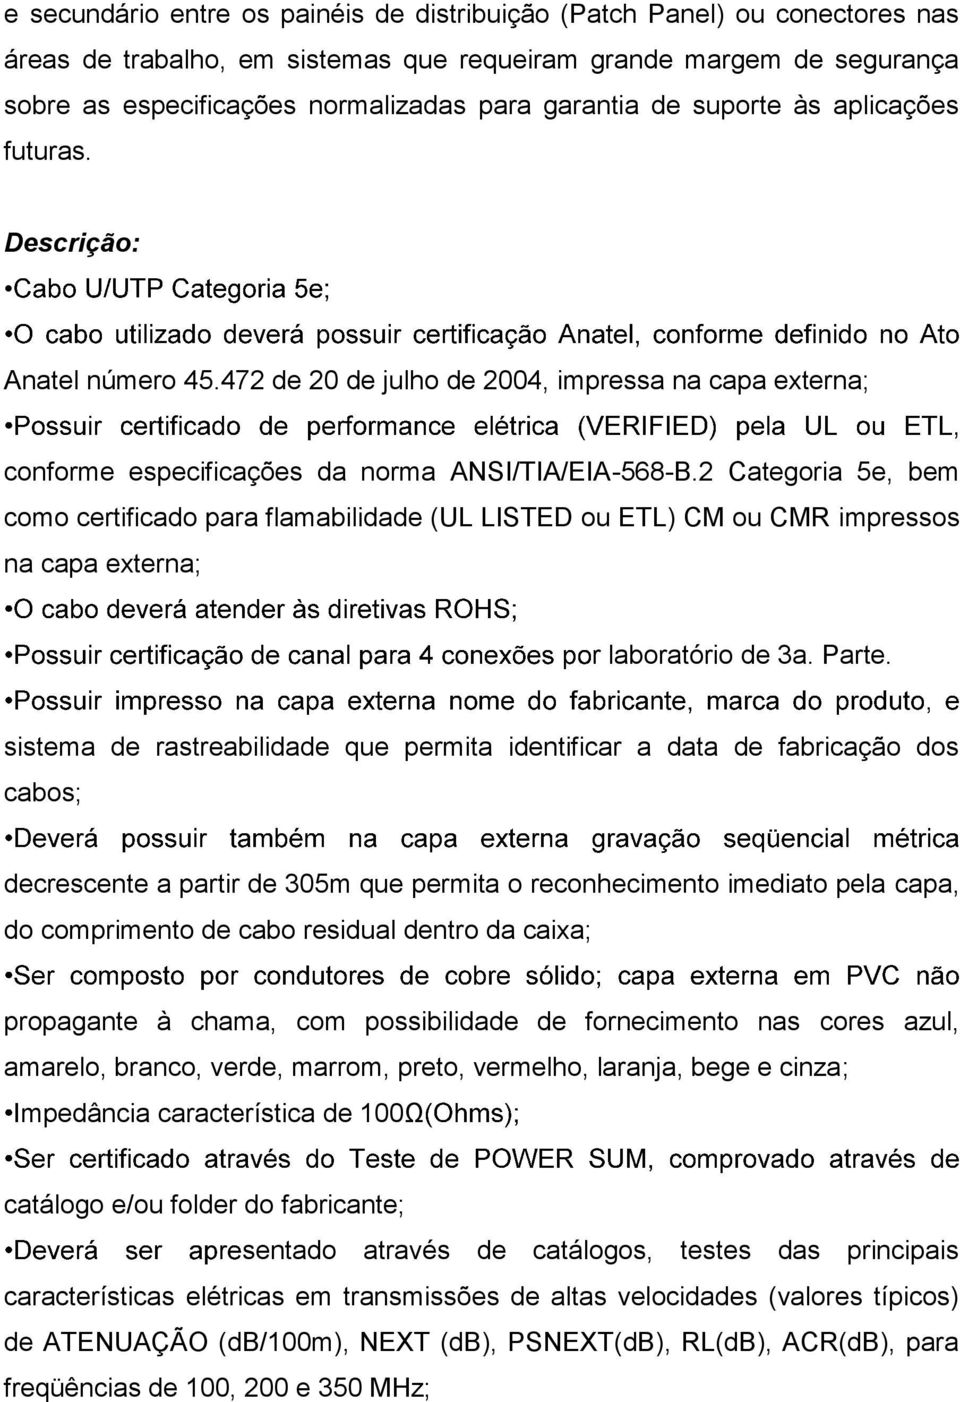 2 Categoria 5e, bem como certificado para flamabilidade (UL LISTED ou ETL) CM ou CMR impressos na capa externa; r laboratório de 3a. Parte.